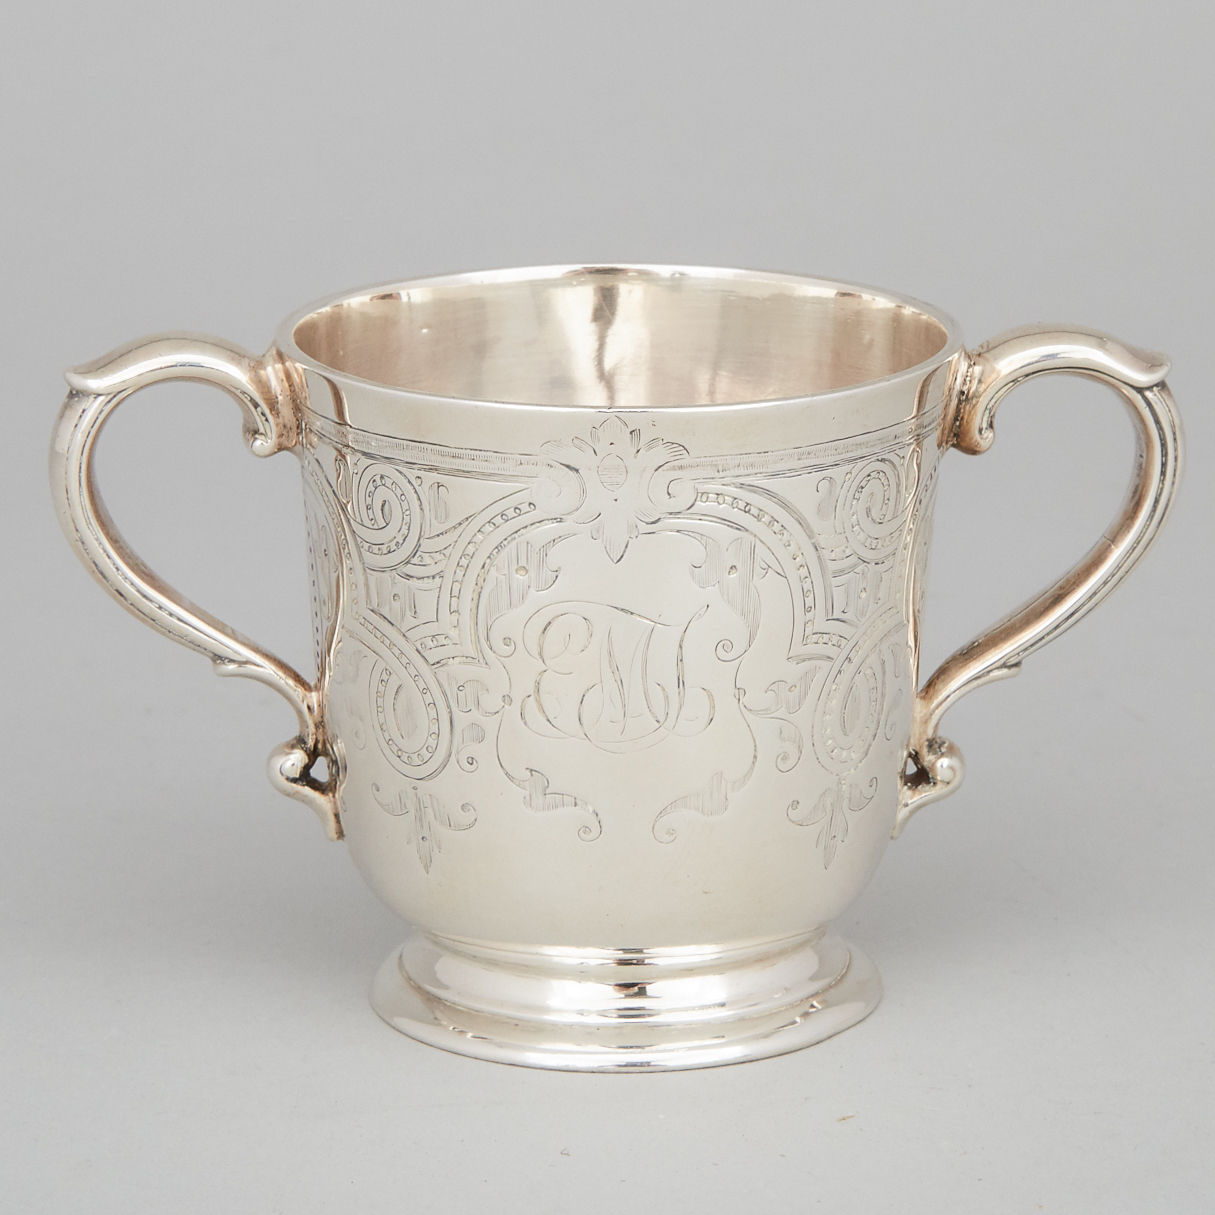 Victorian Silver Two-Handled Cup, Edward Ker Reid, London, 1858